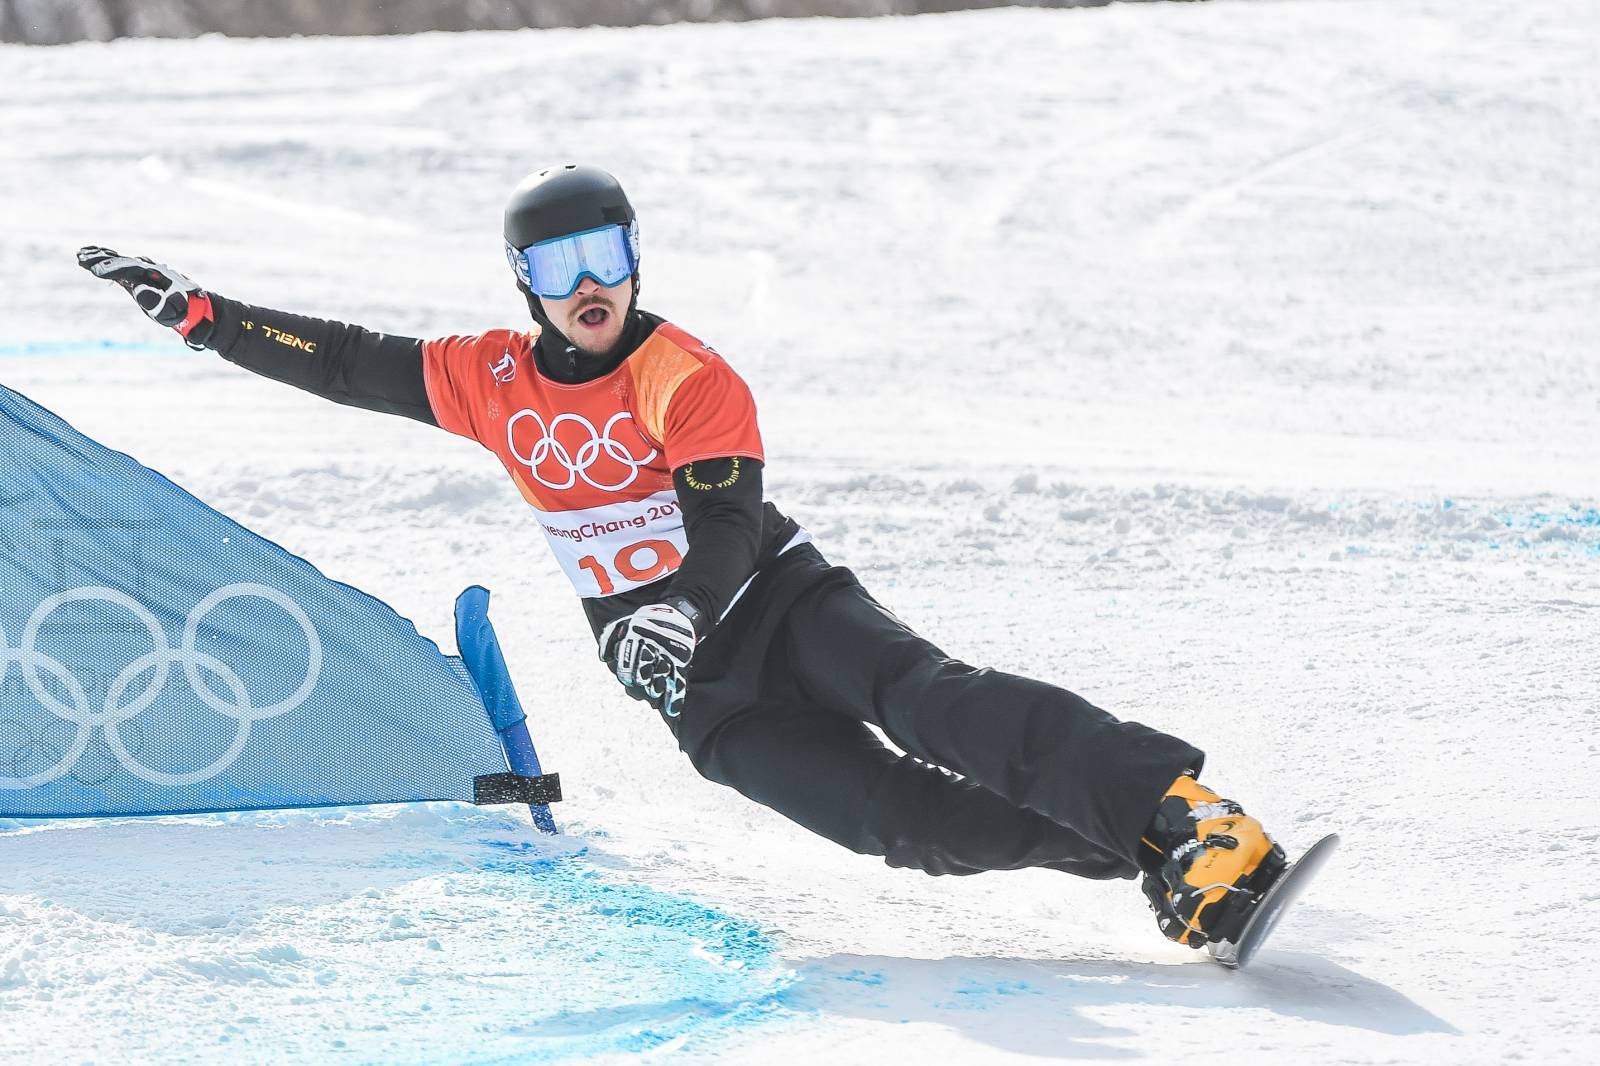 Олюнин: Завоевание Виктором Уайлдом бронзы в Пекине станет хорошим завершение карьеры сноубордиста 